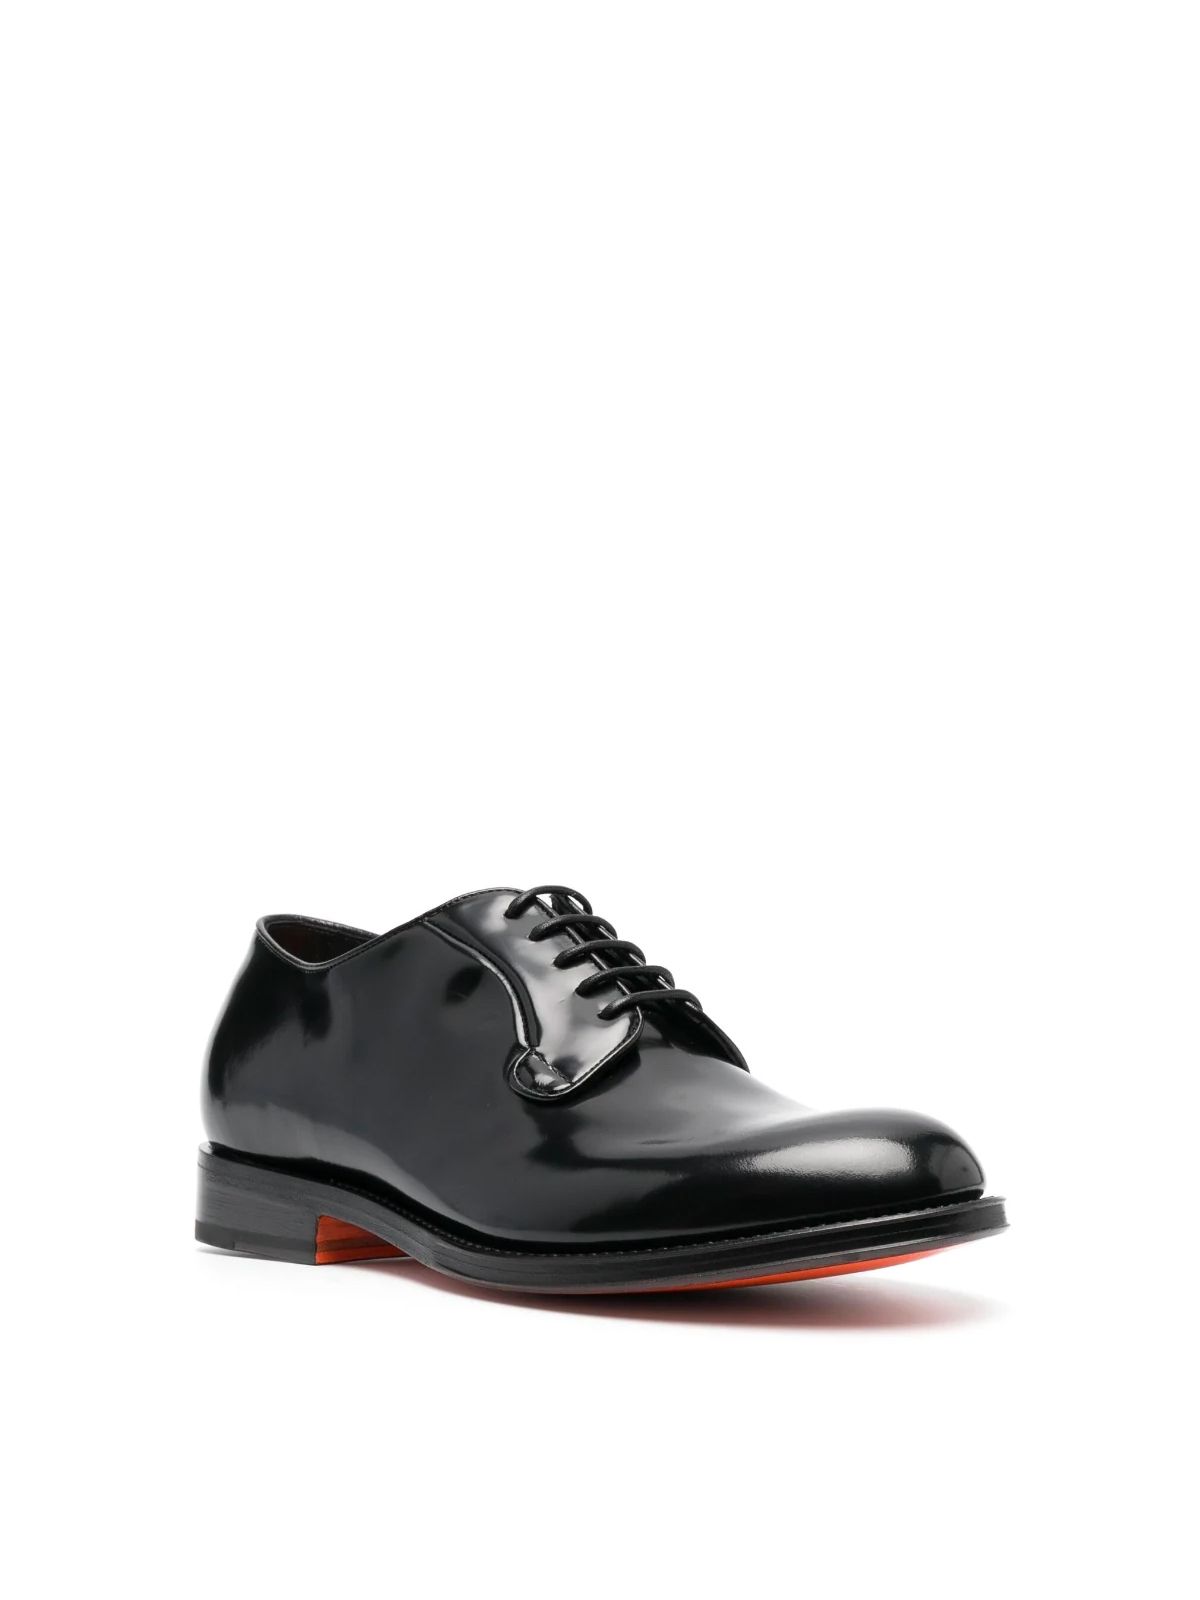 Shop Santoni Men's Laced Shoes: Guillem